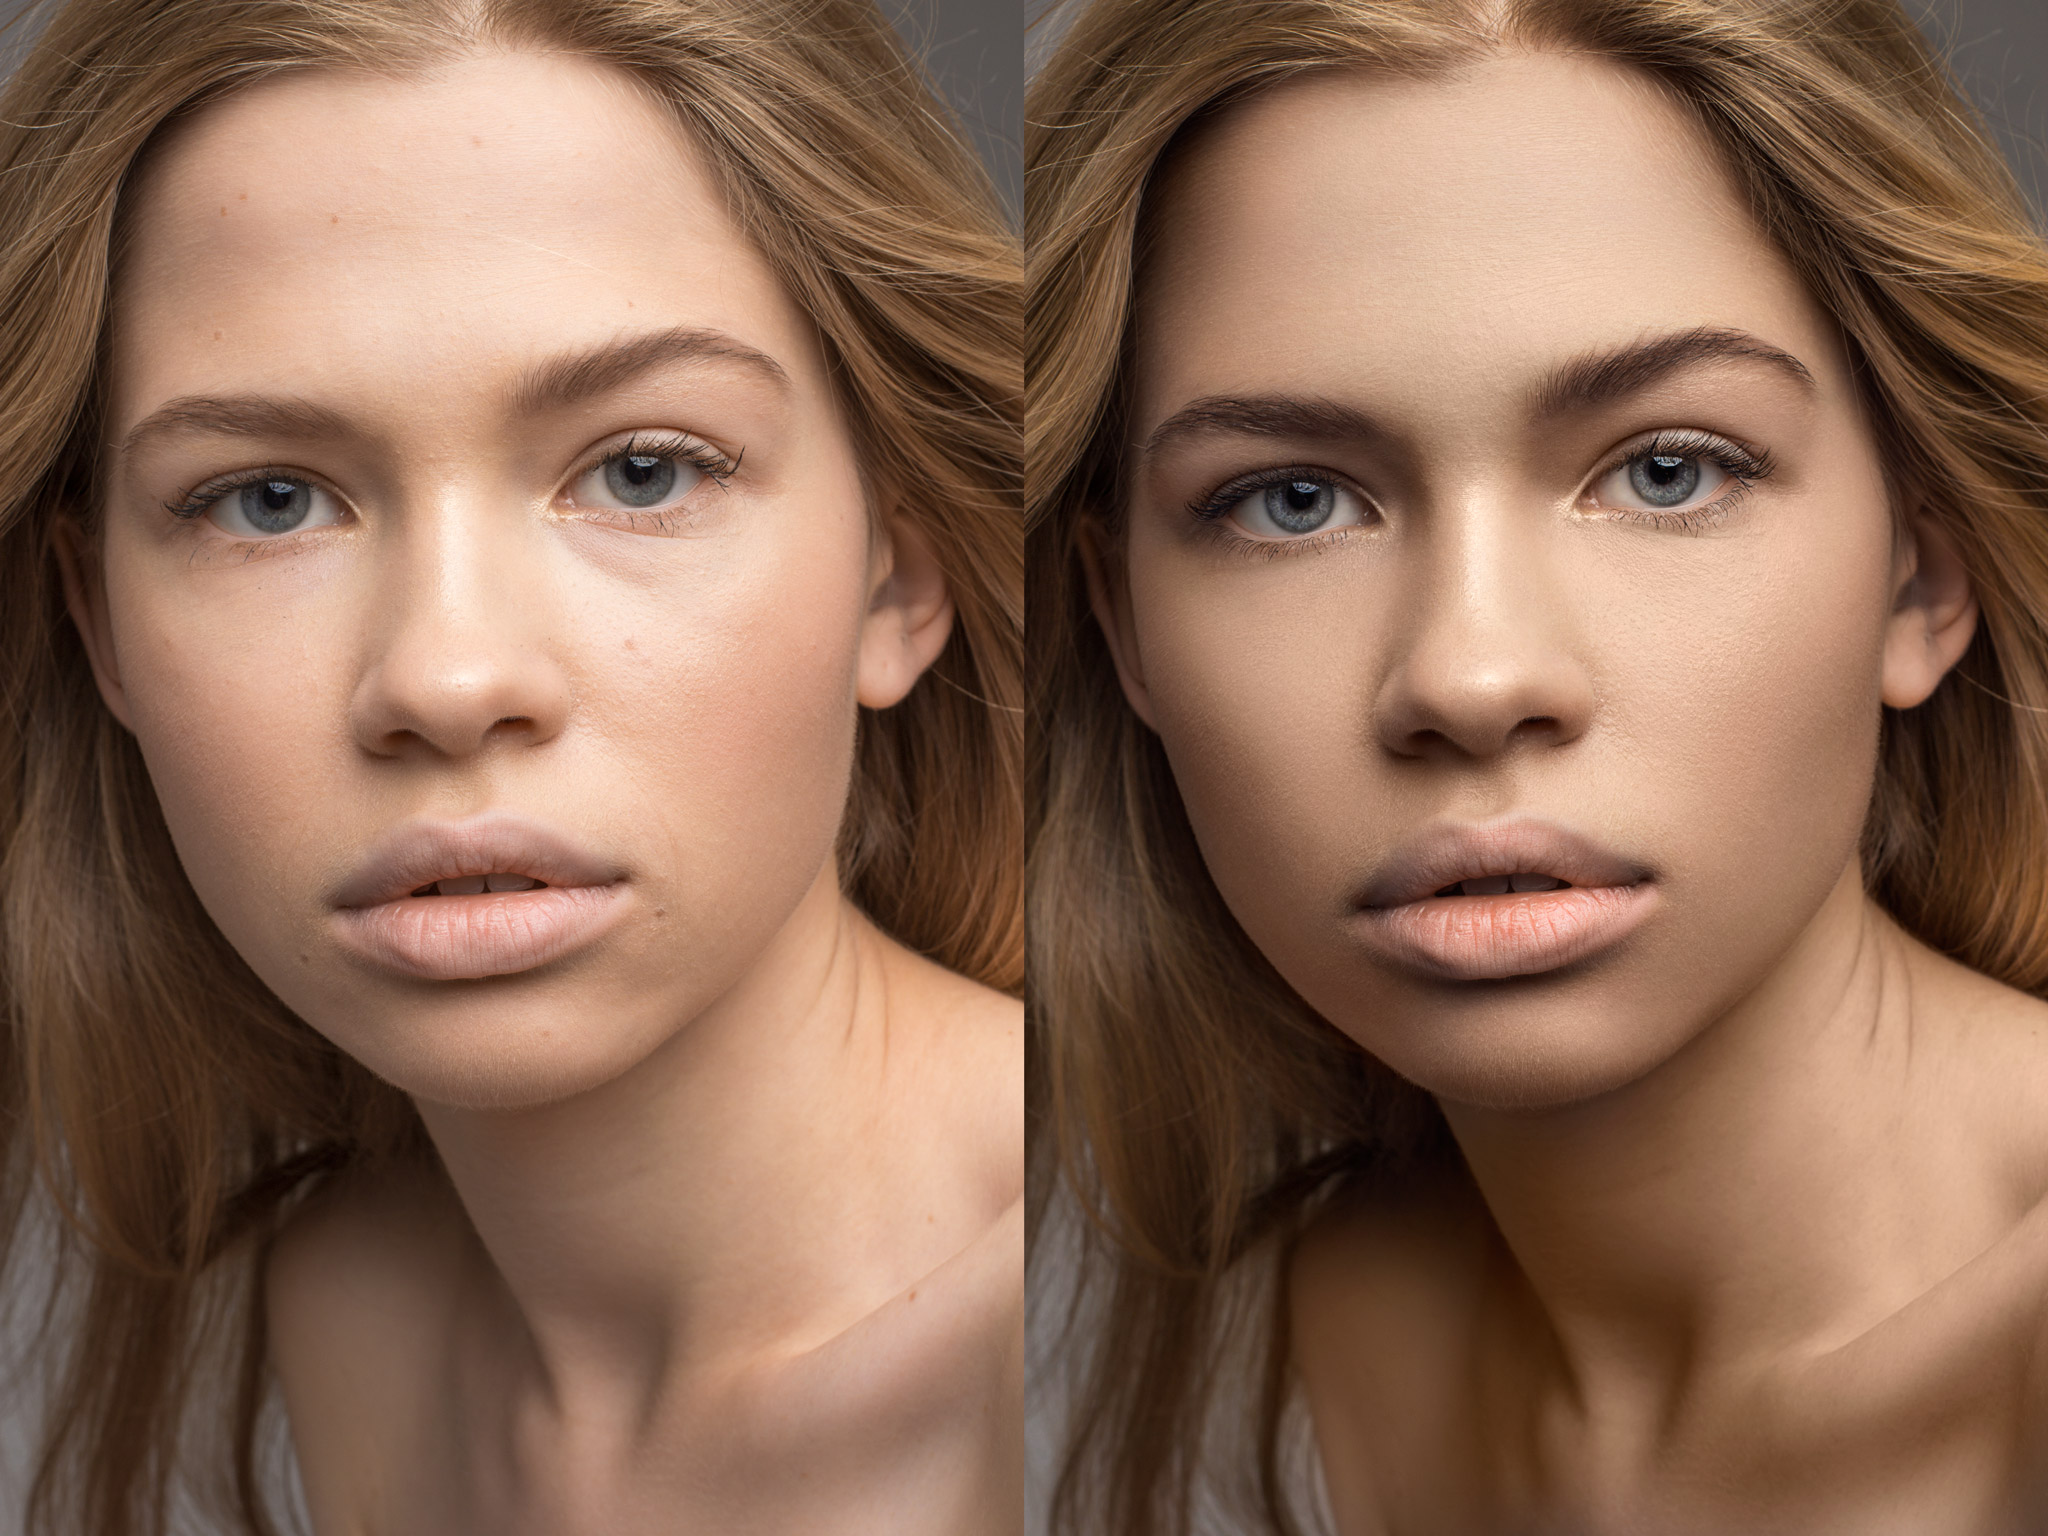 Приложение для обработки фото до и после